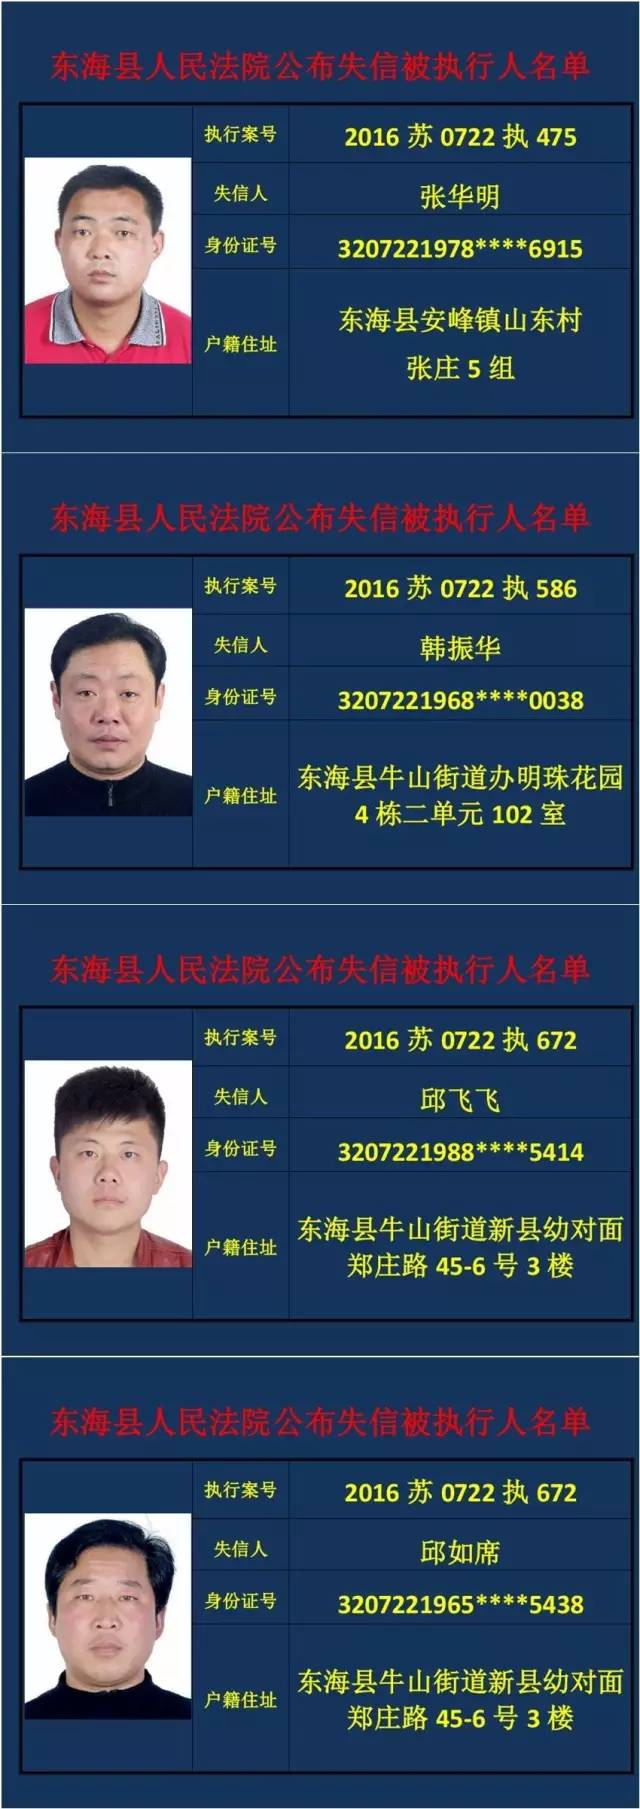 东海县法院曝光两批"失信被执行人"名单!看看有你认识的吗?